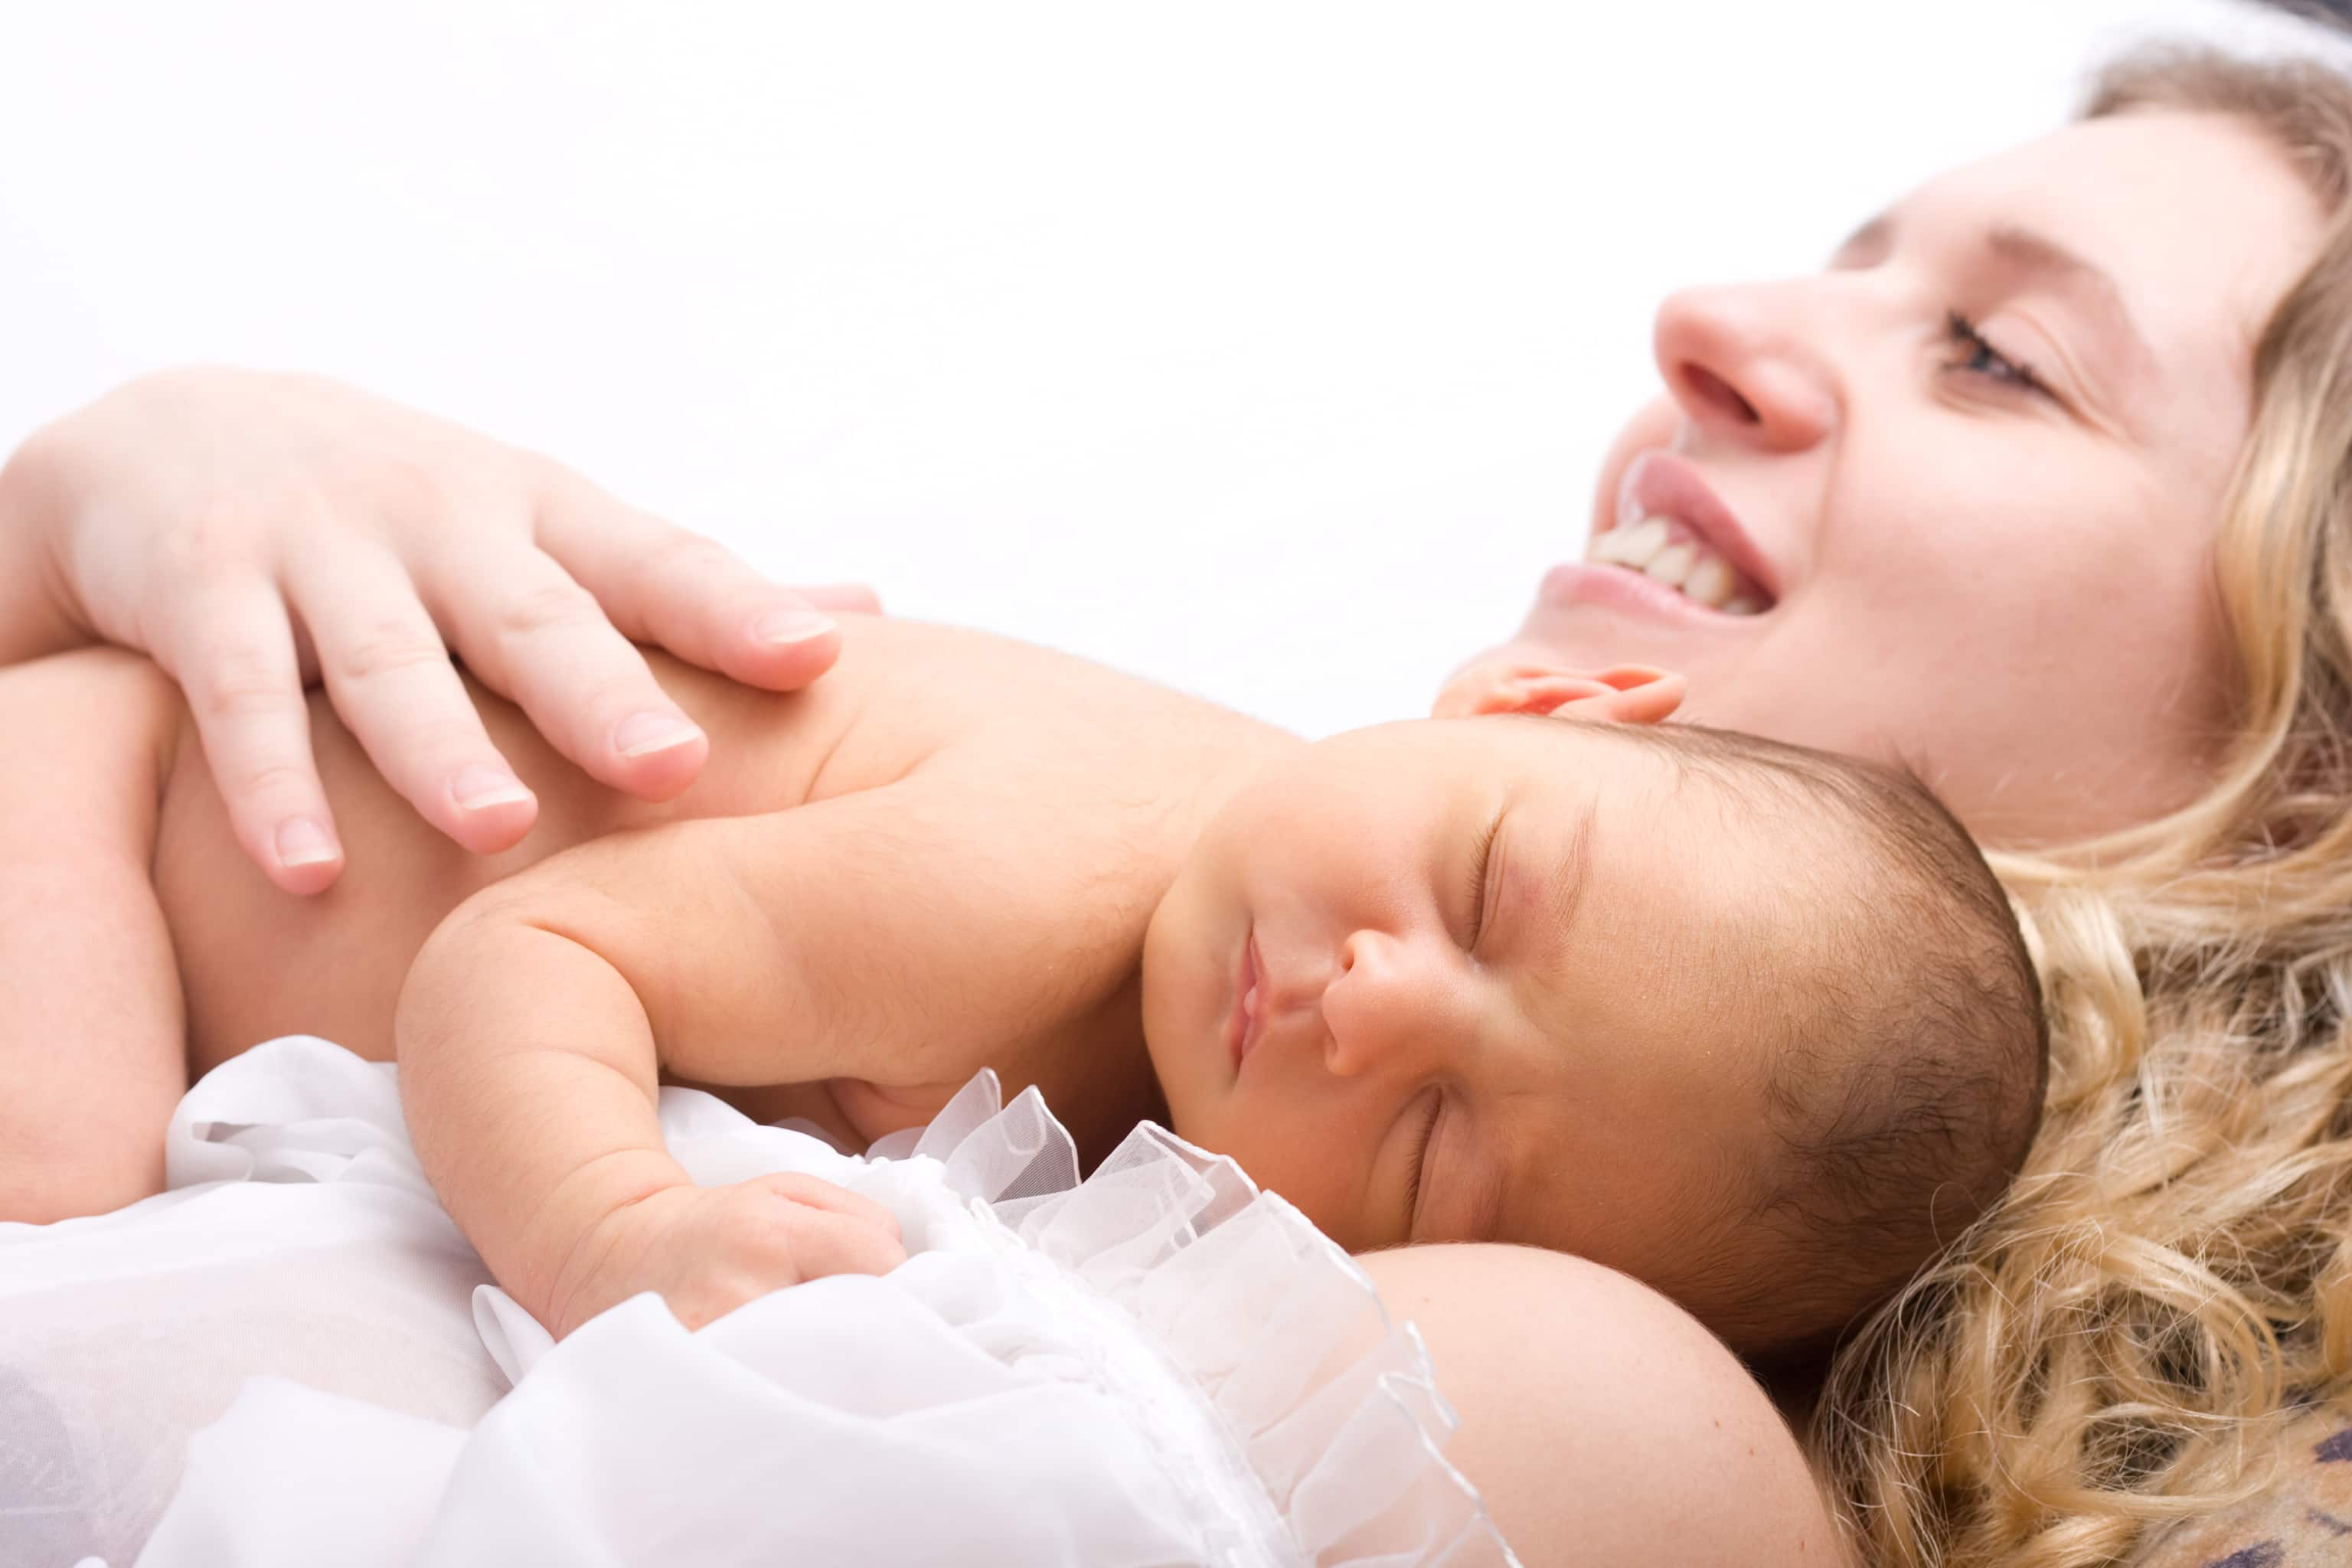 Tüp bebek uygulamasında bebeğin cinsiyeti seçilebilir mi?